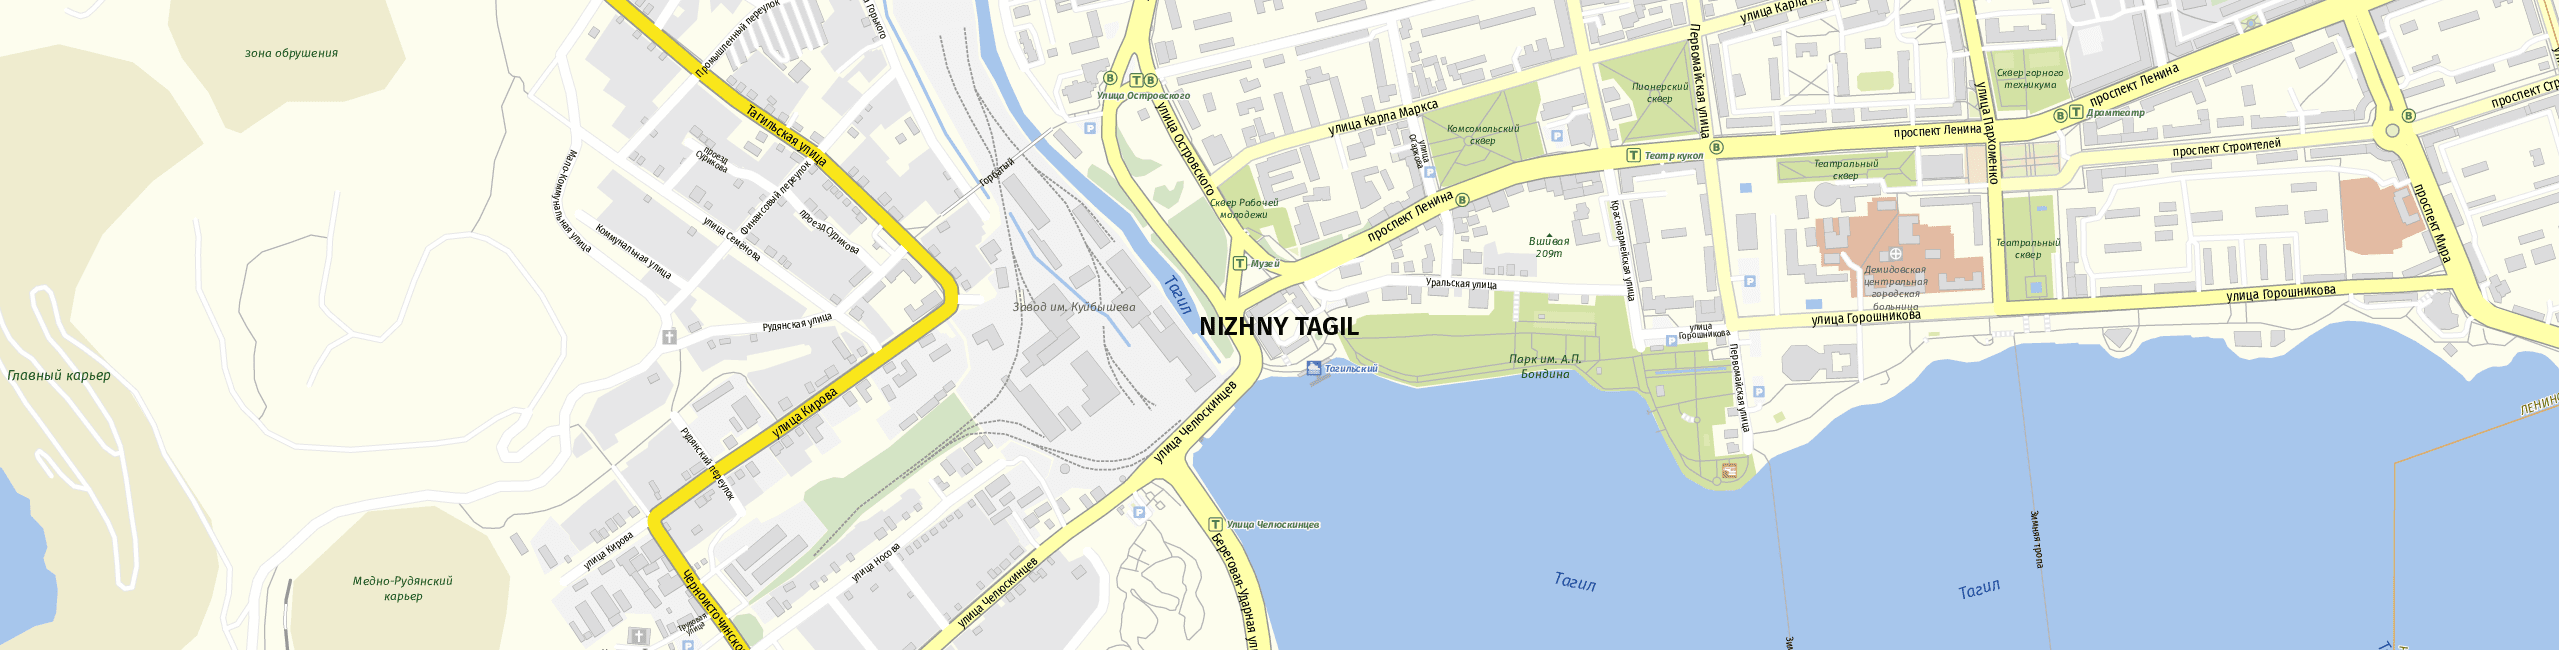 Stadtplan Nischni Tagil zum Downloaden.